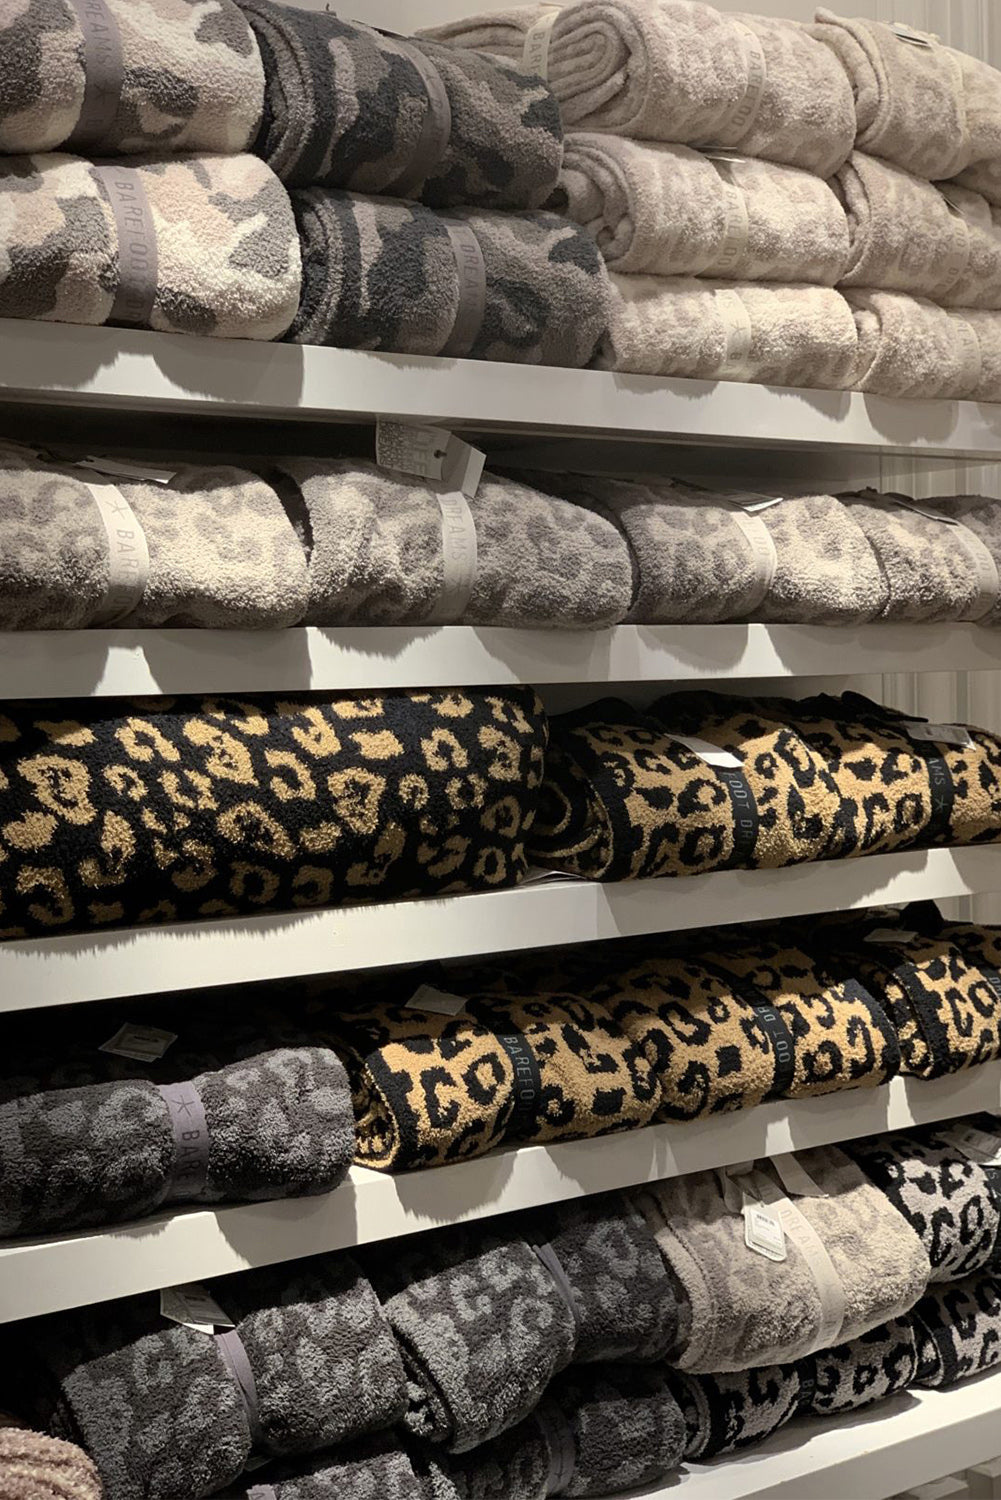 Black Leopard Grain Knitting 127*152cm Blanket